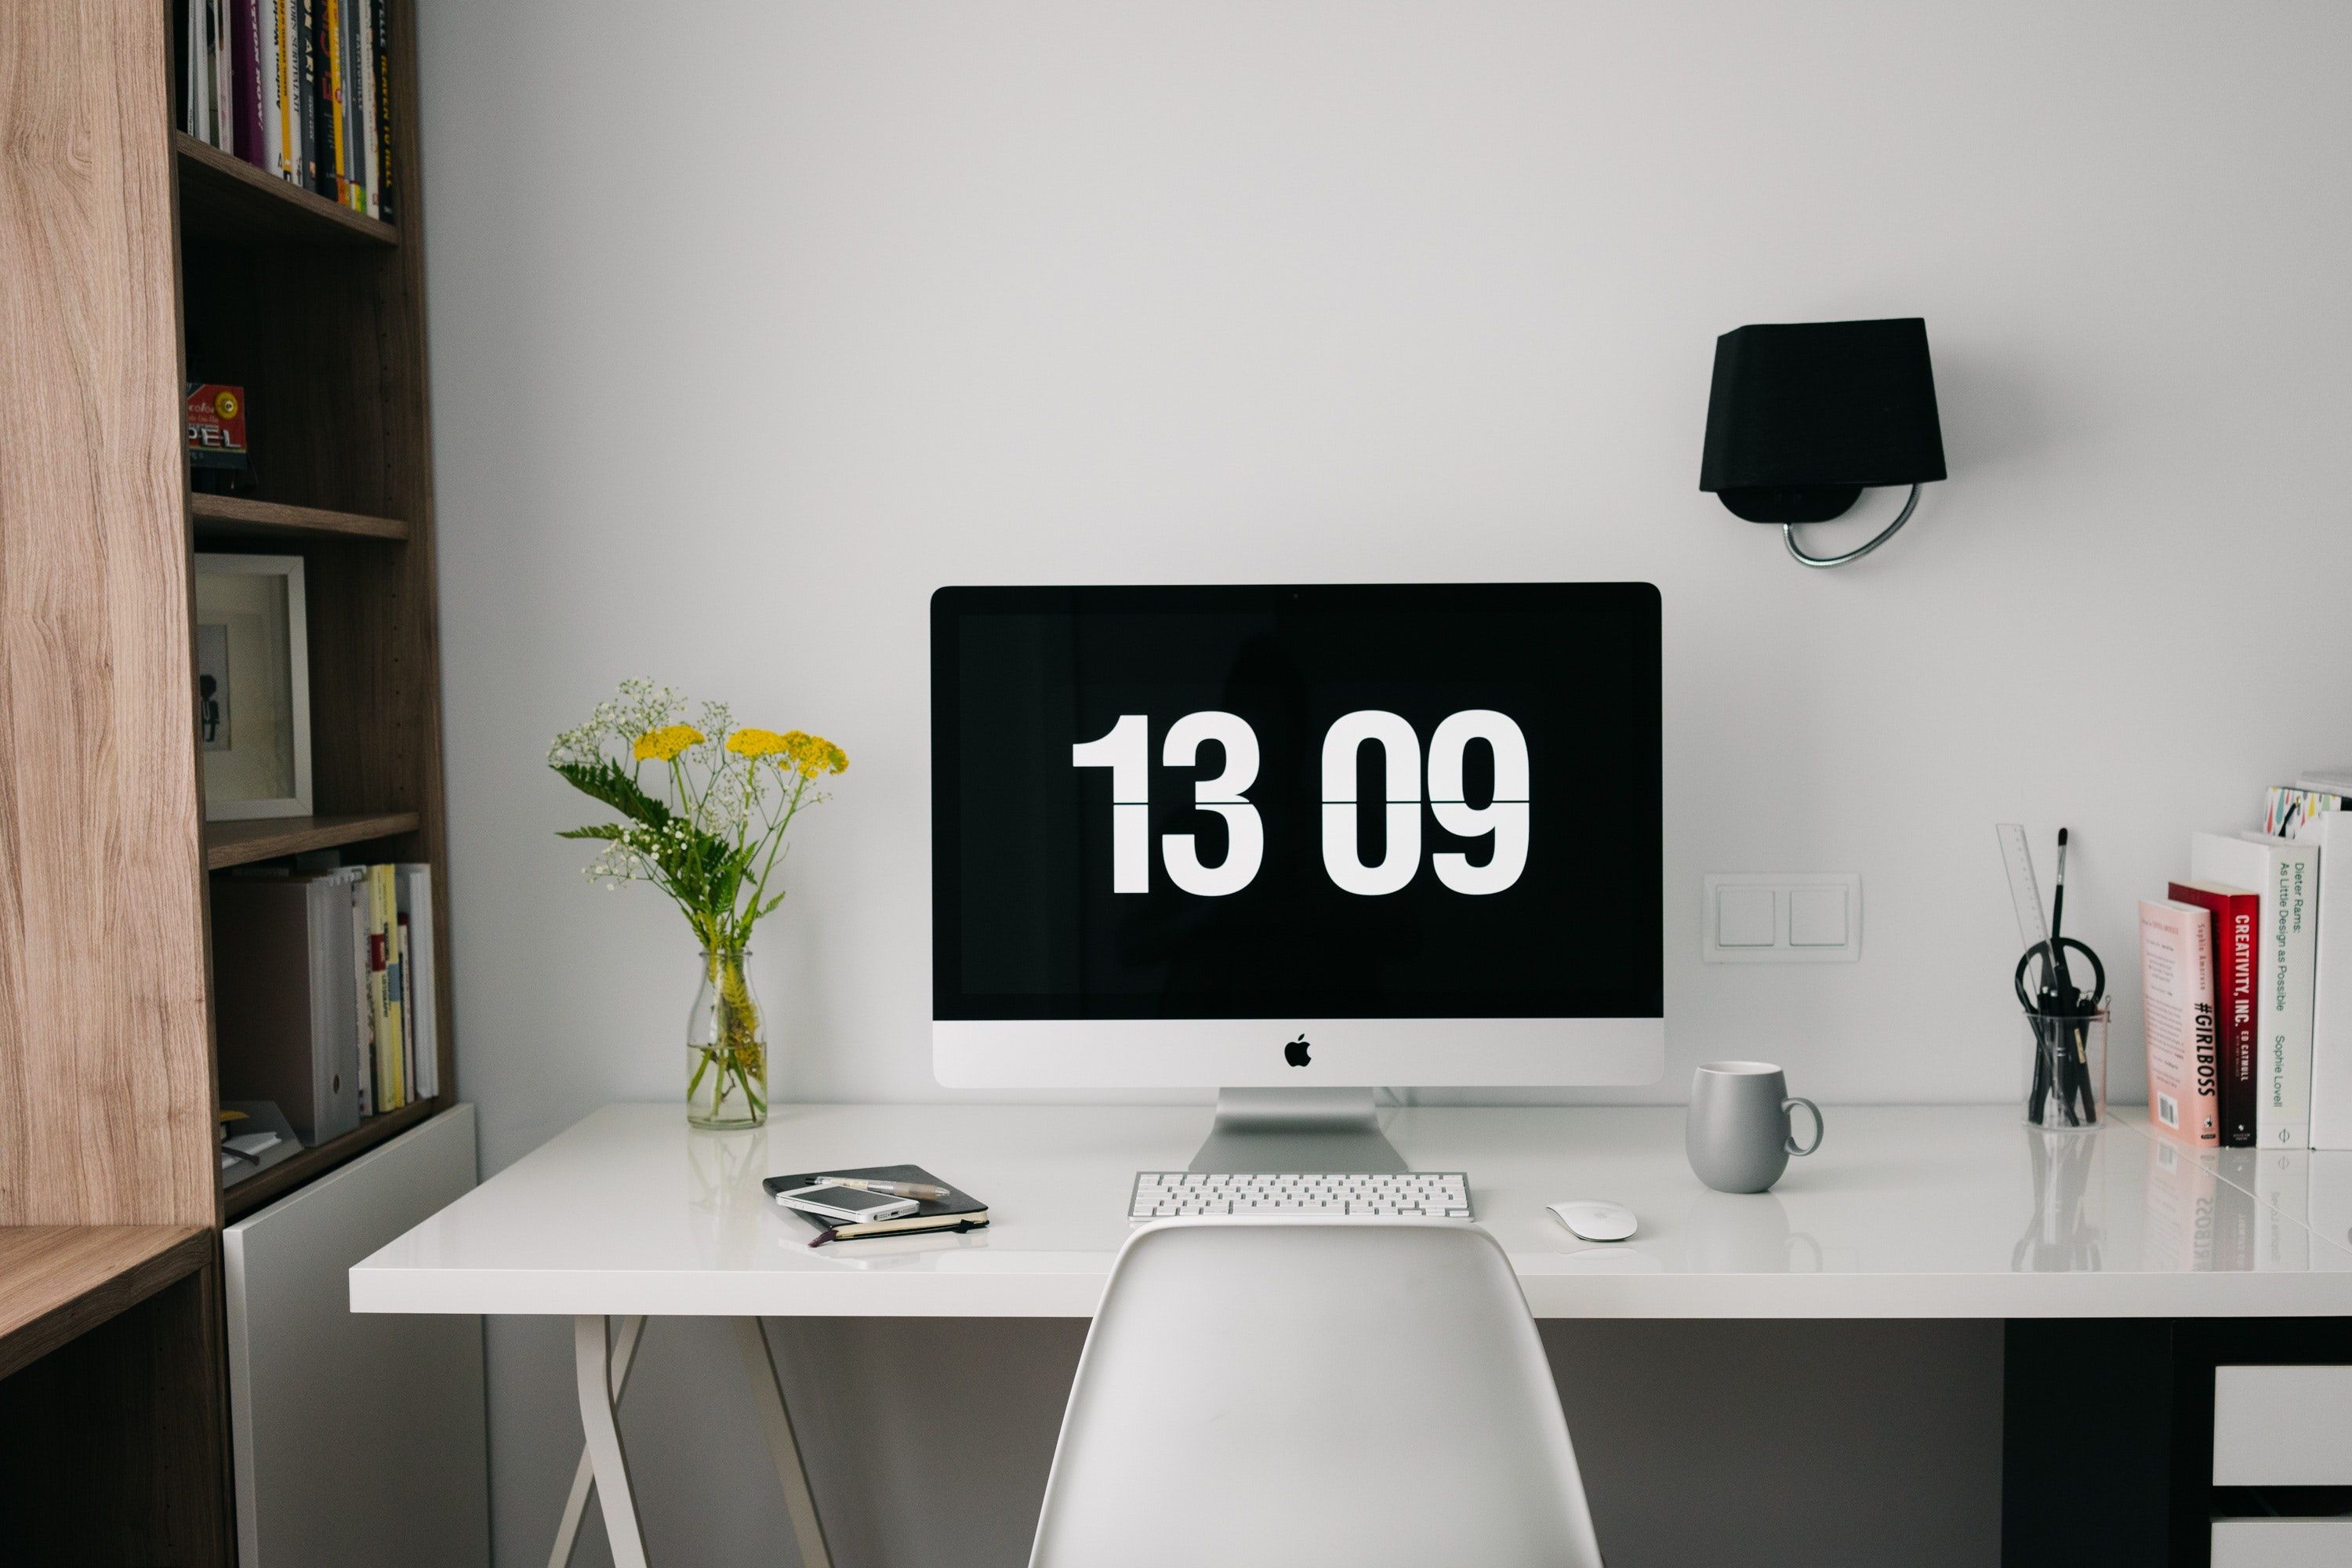 Mac desktop computer displaying a large clock. 